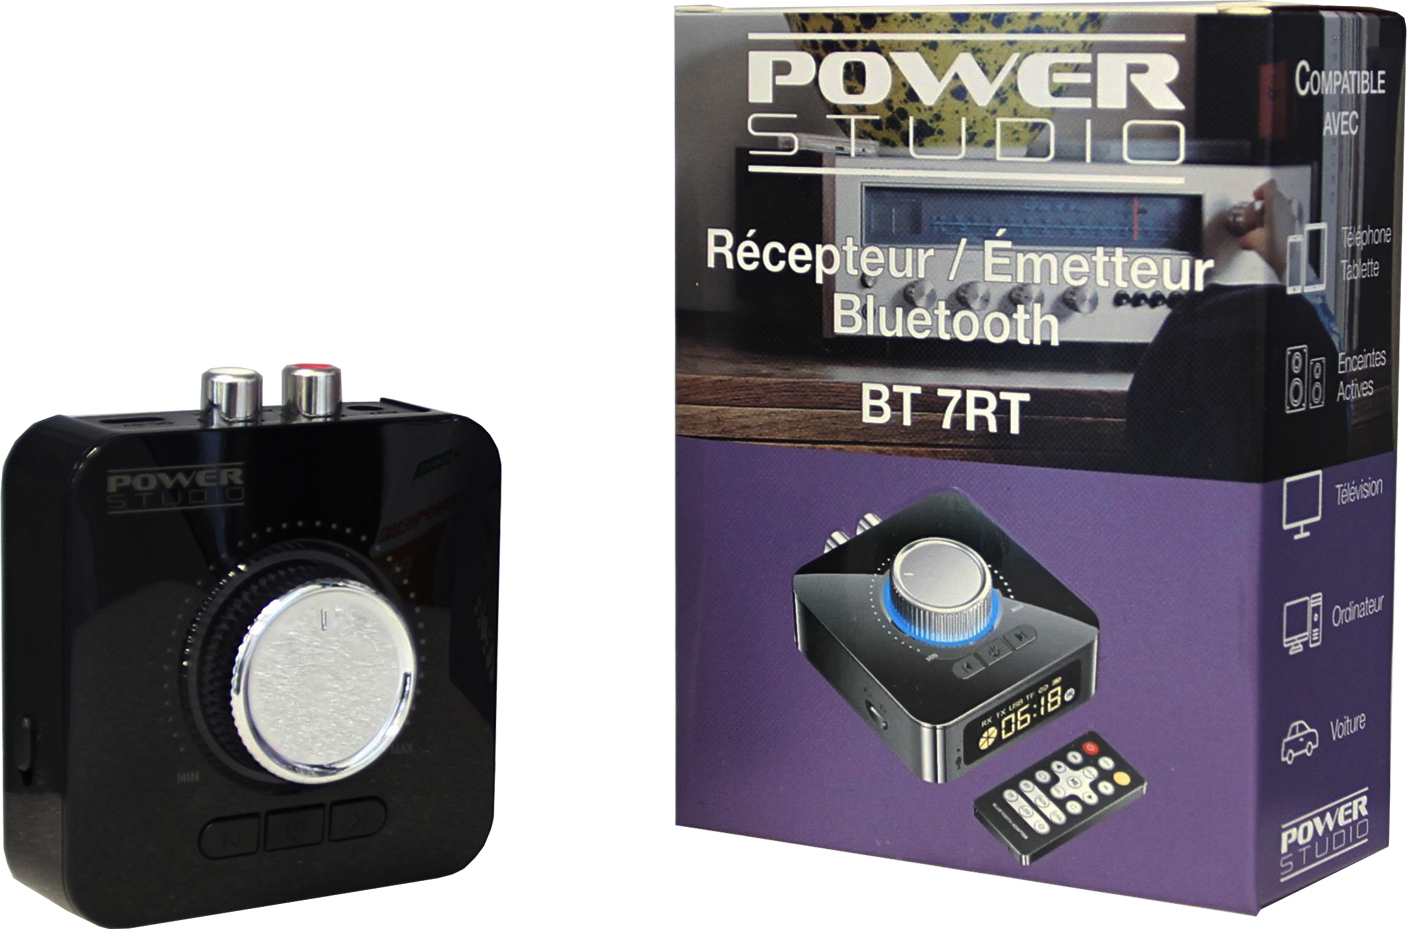 Power Studio Bt 7rt - Draadloos systeem voor luidsprekers - Main picture